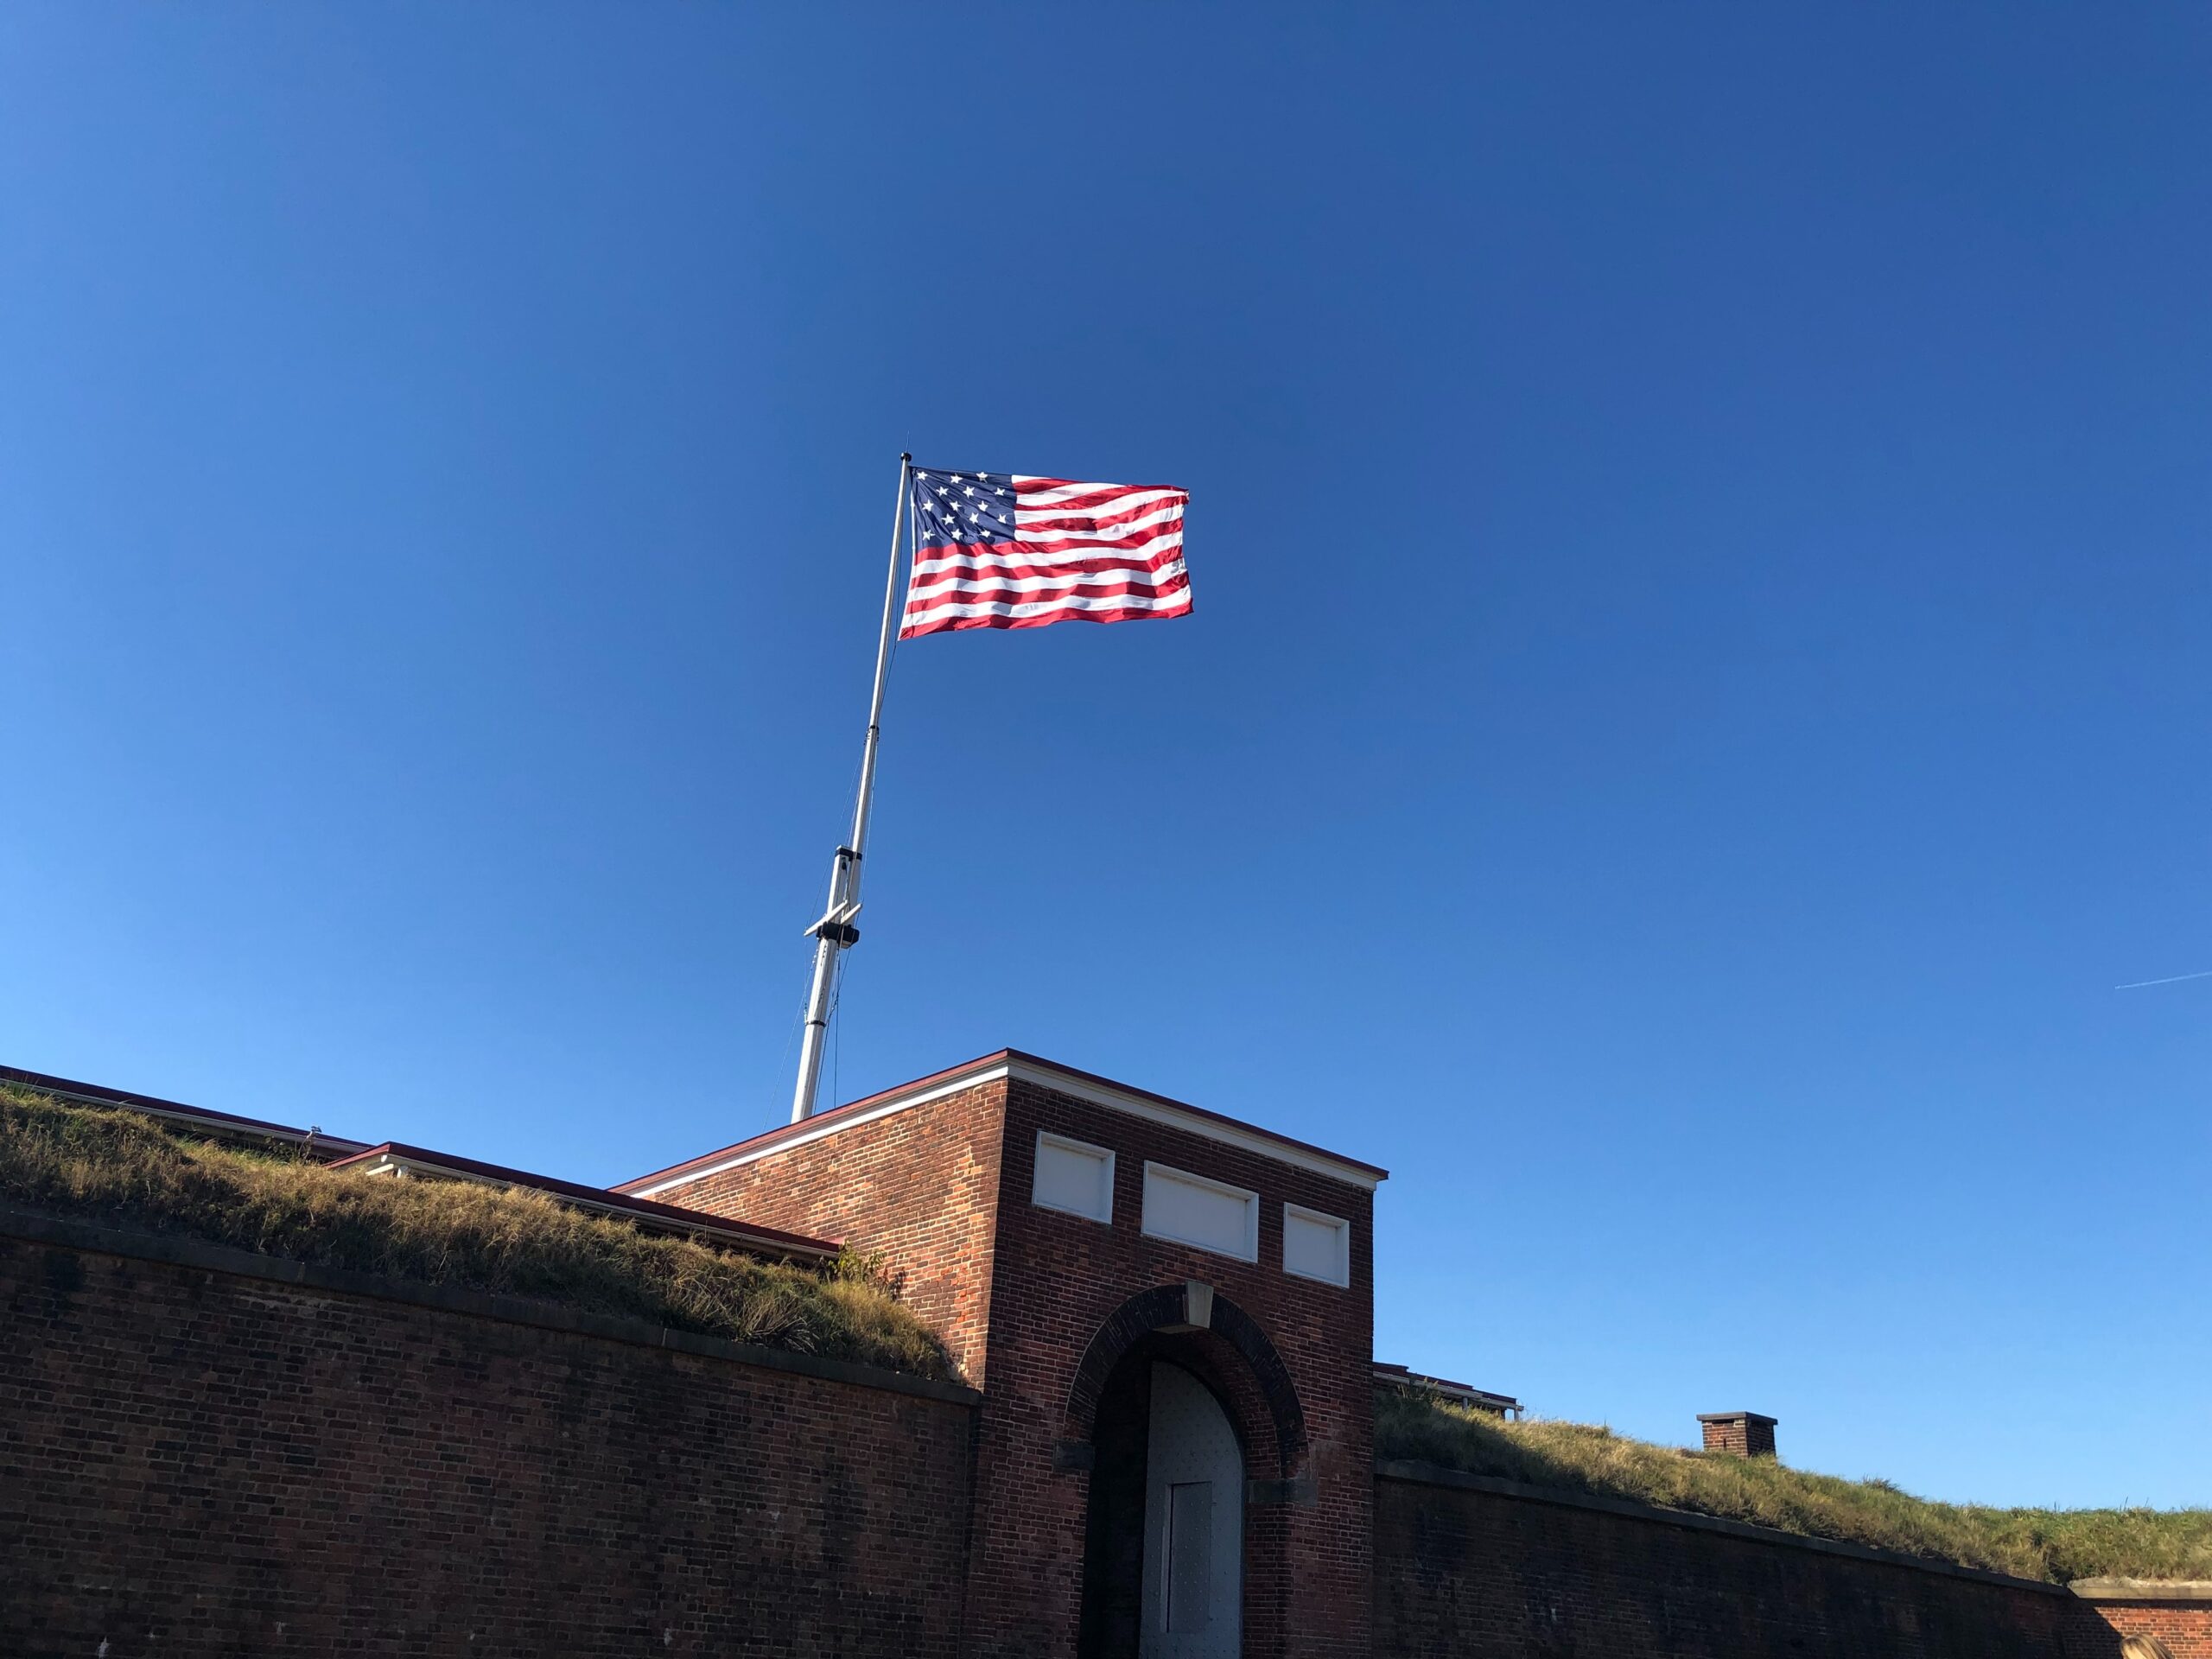 Fort McHenry National Monument & Historic Shrine